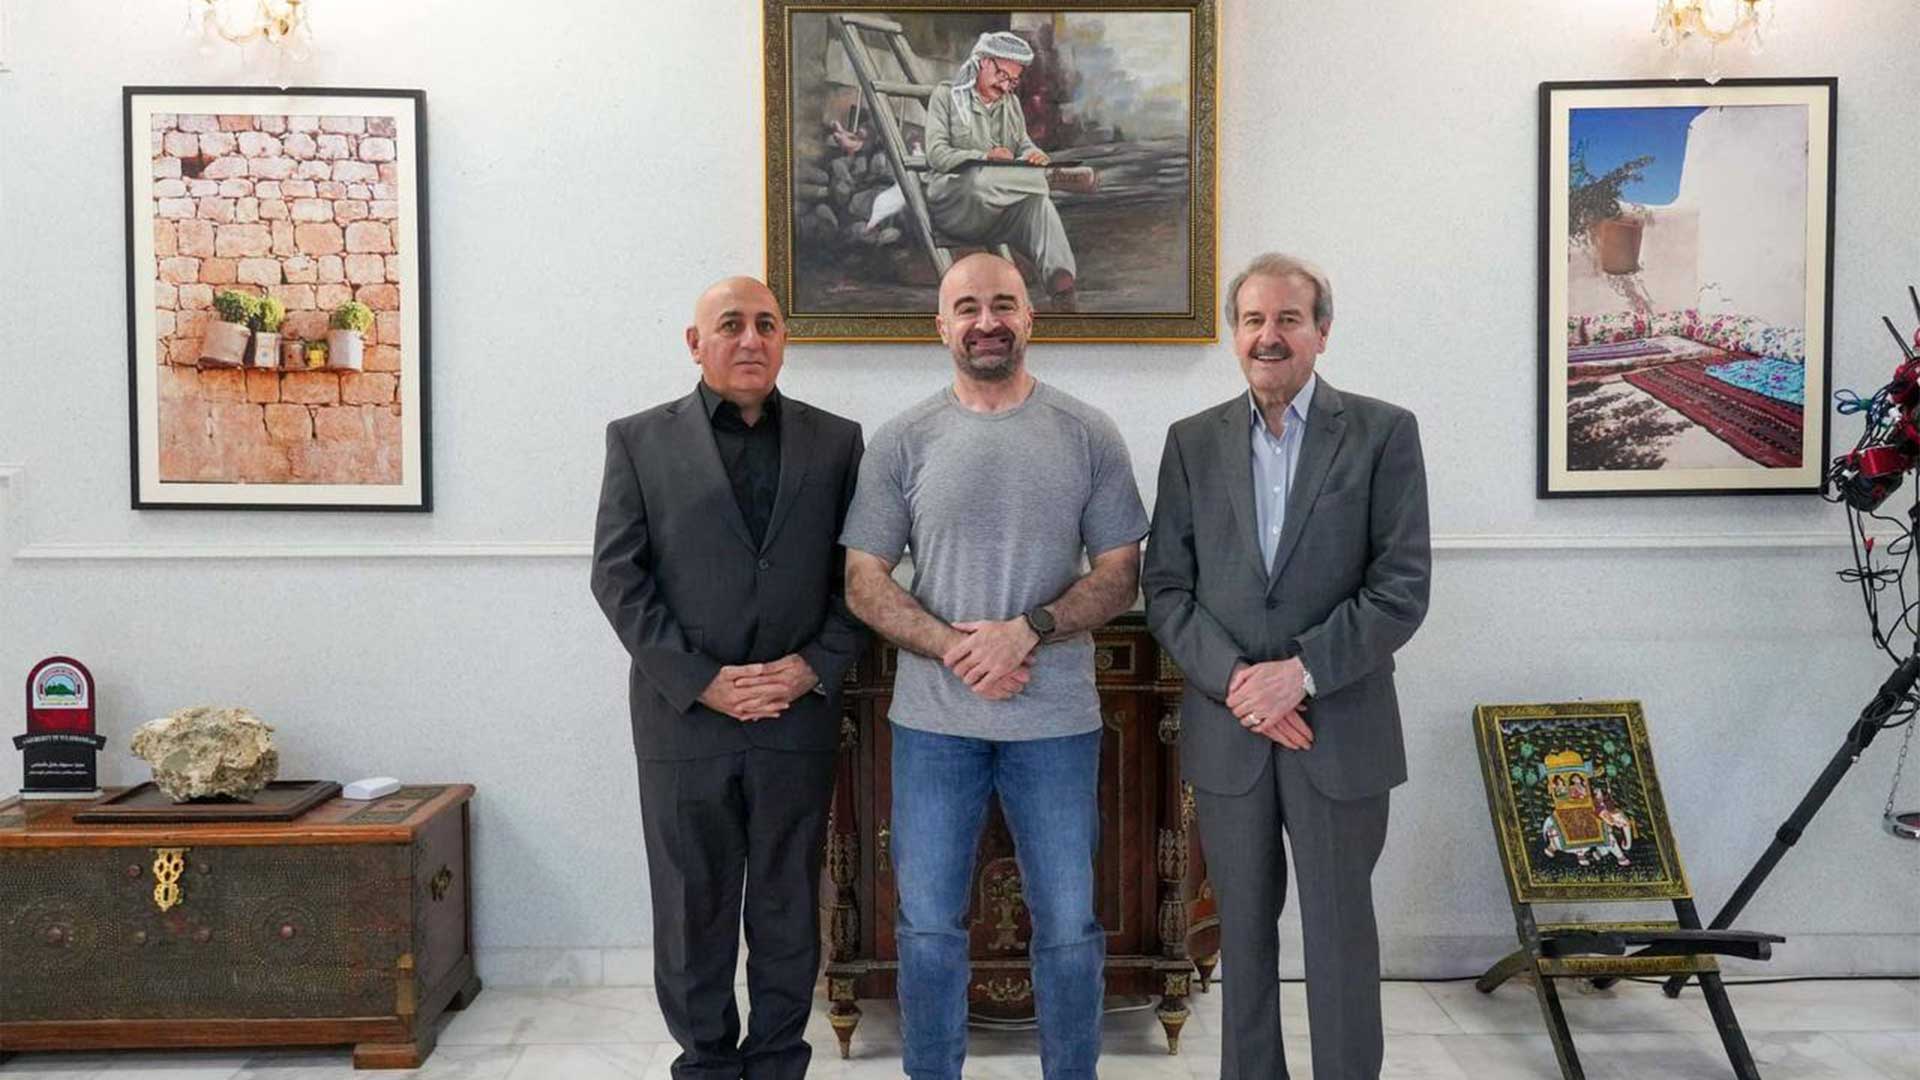  الرئيس بافل جلال طالباني مع جلال شيخ ناجي والدكتور خسرو  